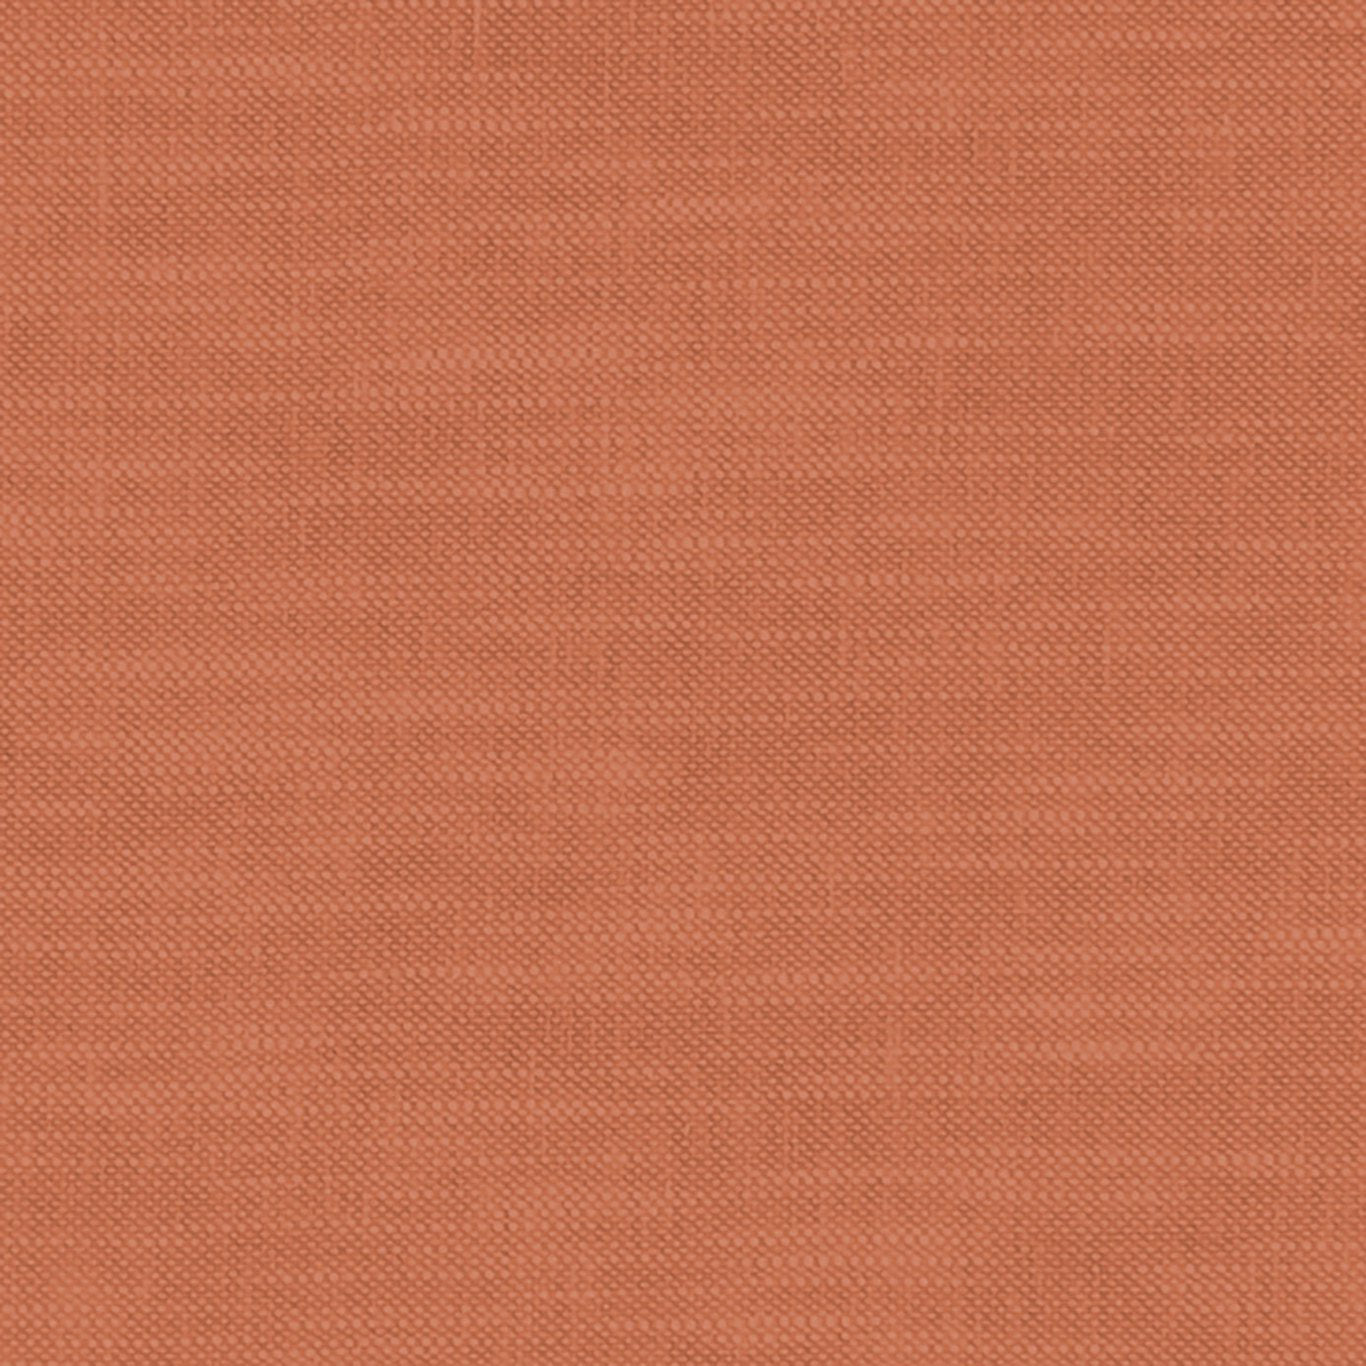 Amalfi Fabric by Clarke & Clarke - F1239/61 - Spice